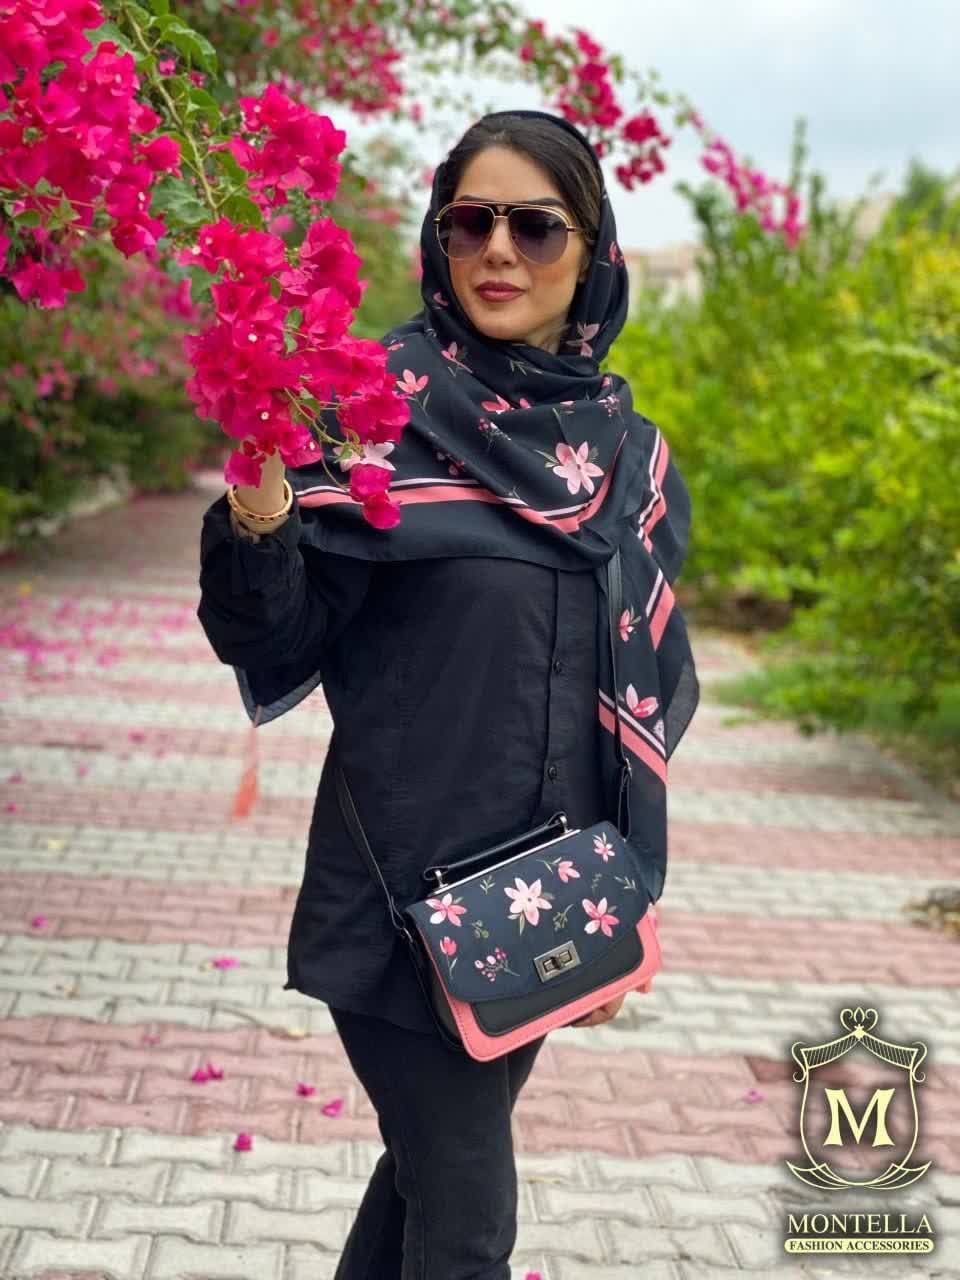 ست کیف و روسری زنانه طرح فلاور رنگ مشکی با گل های گلبهی با کیف دسته چرمی کیفیت عالی با ارسال رایگان کد mo413